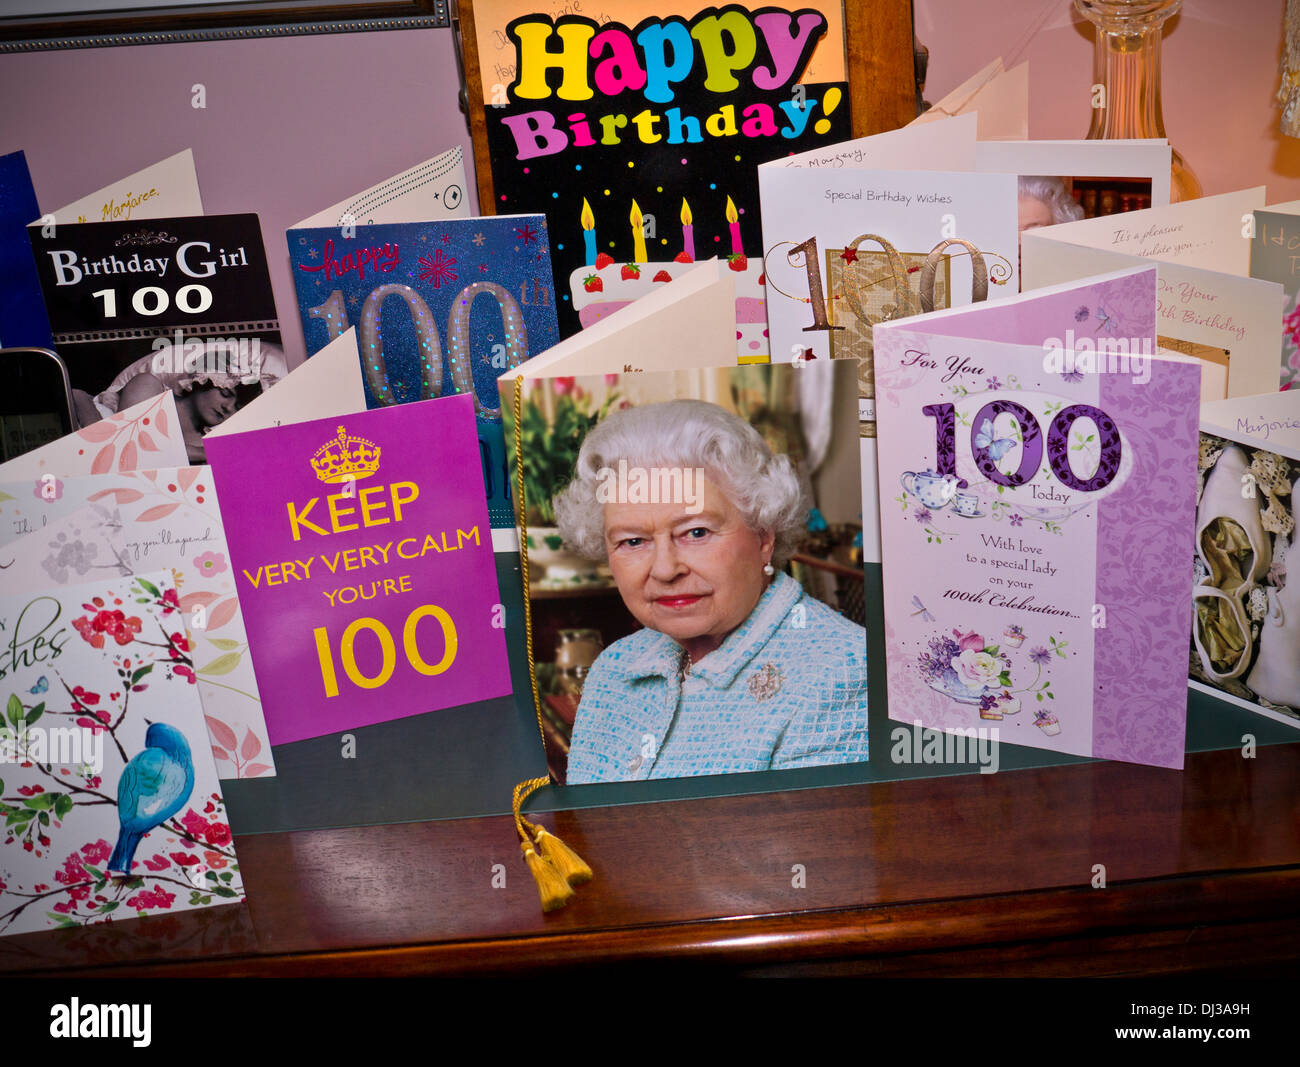 Selezione di carte compleanno di 100 anni sulla sponda laterale con la tradizionale carta iconica della regina Elisabetta II di HRH al centro Foto Stock